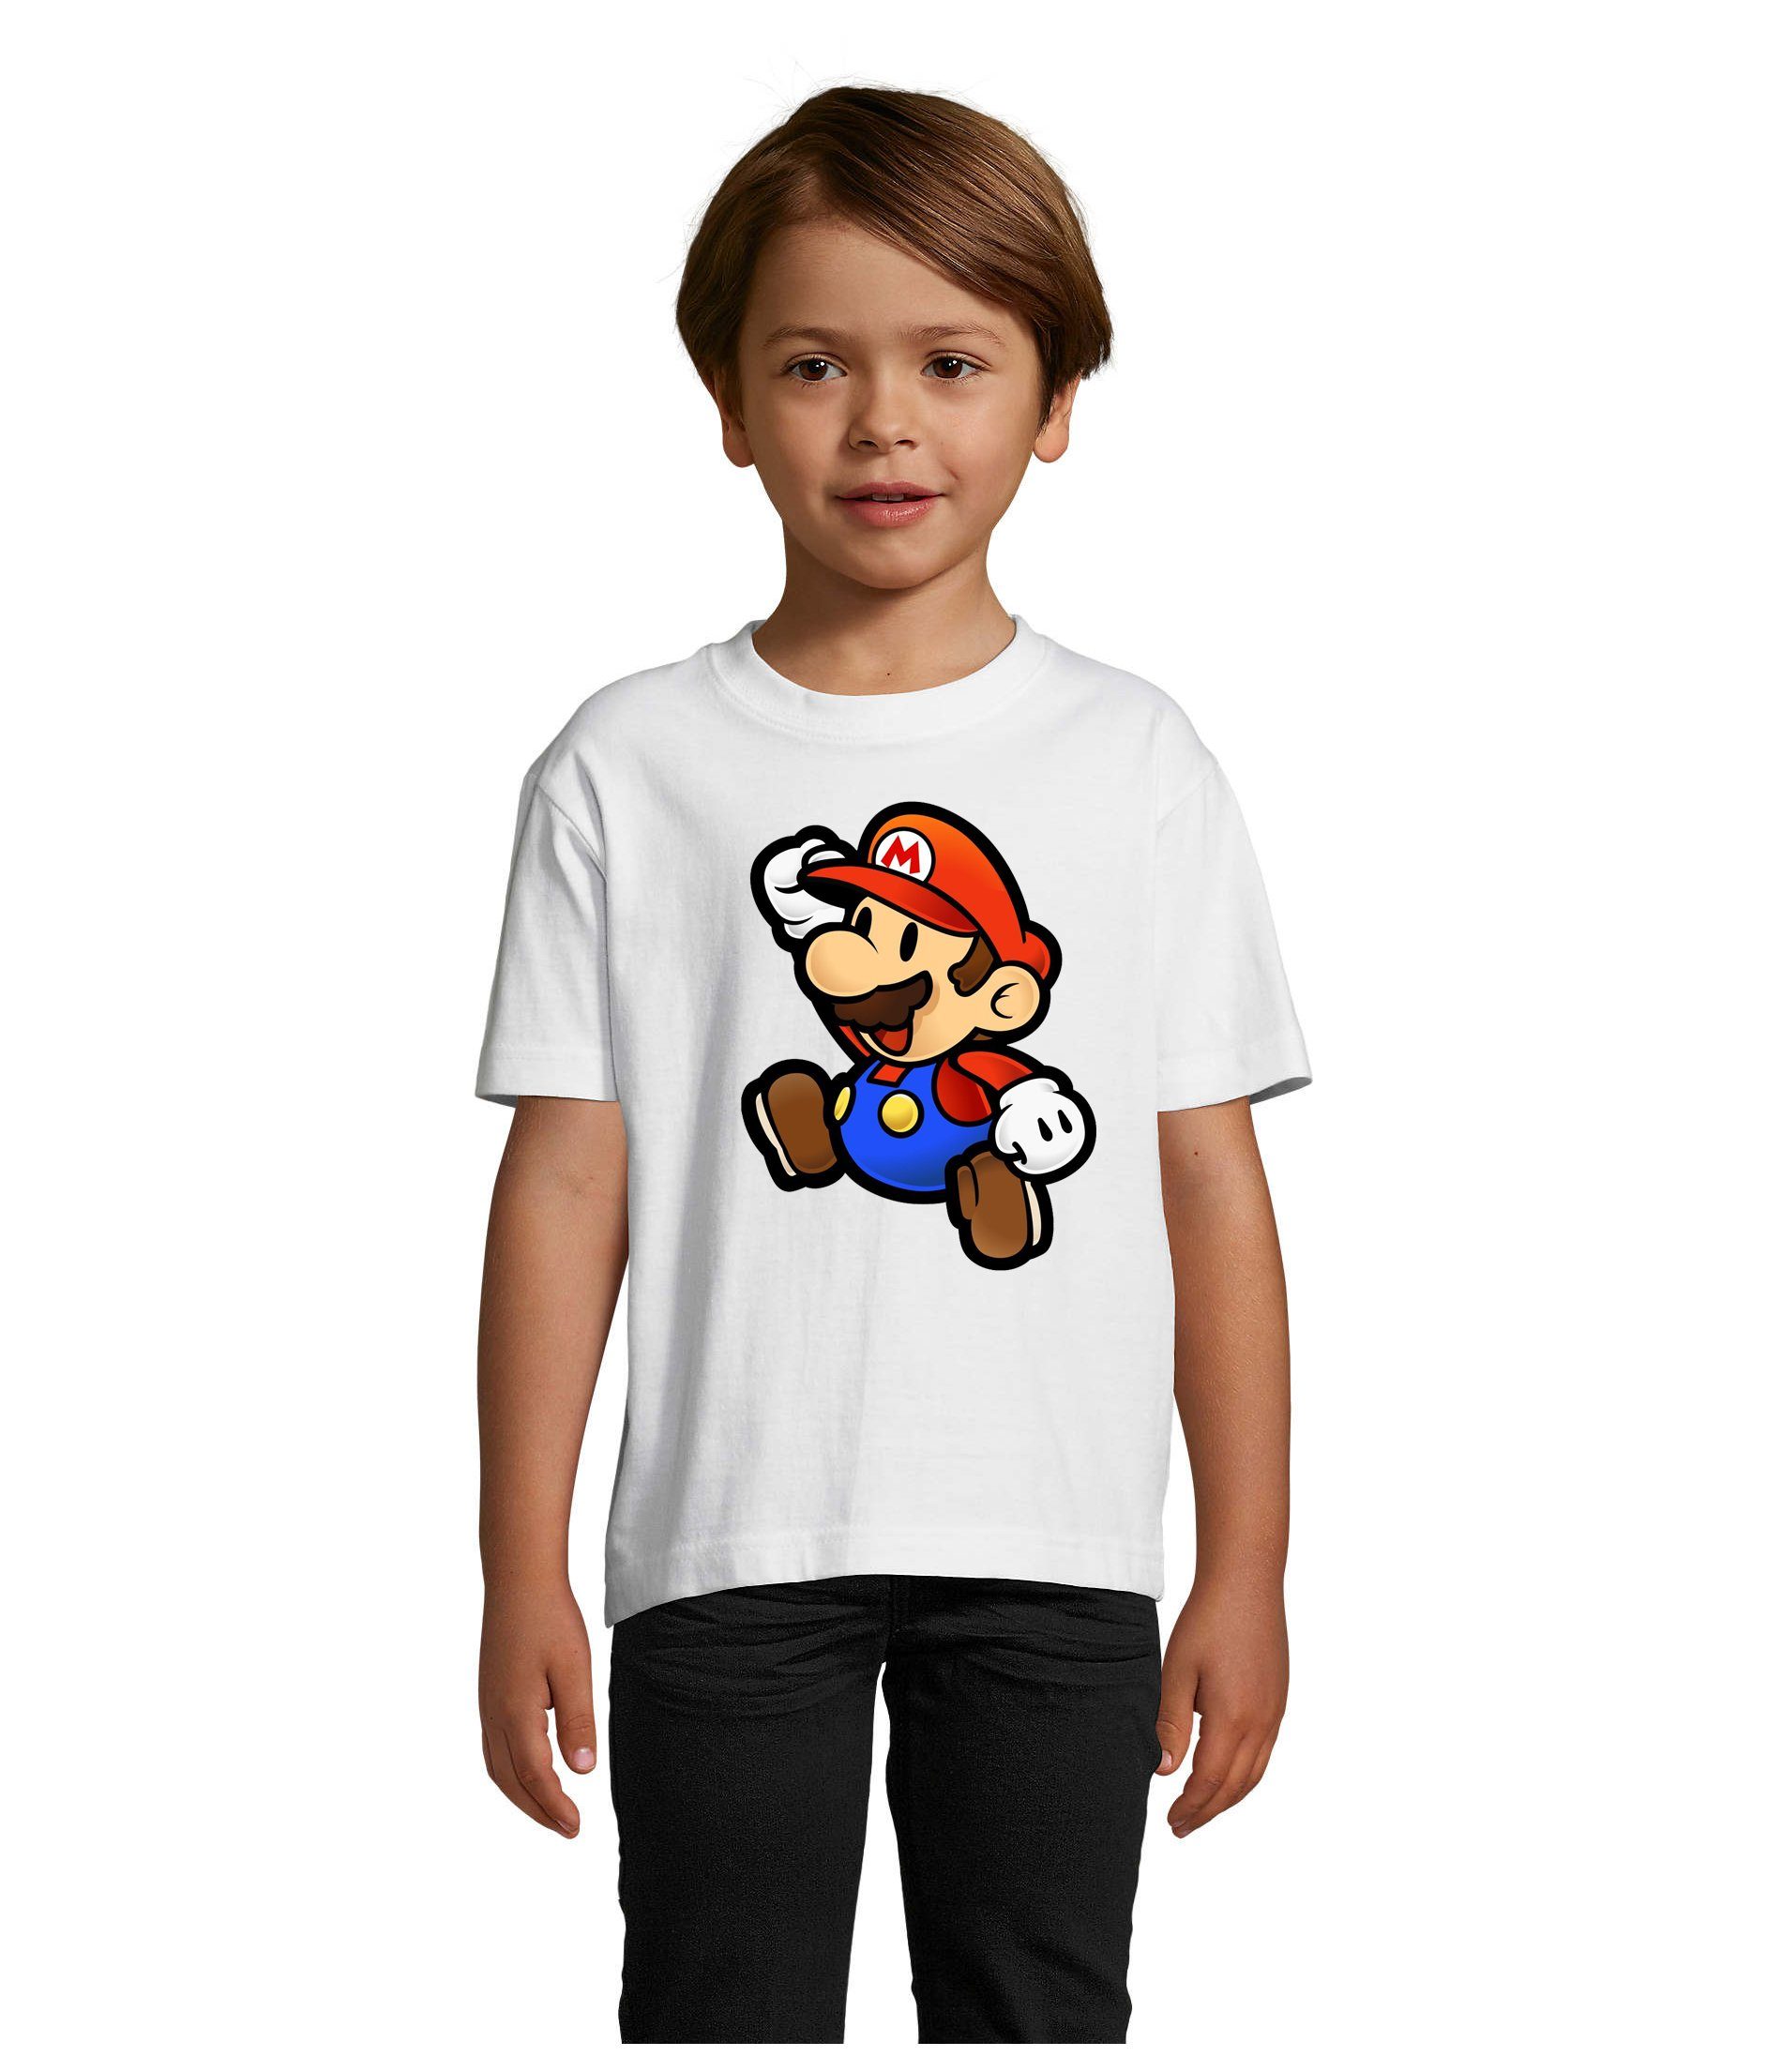 Blondie & Brownie T-Shirt Kinder Jungen & Mädchen Mario Nintendo Gaming Luigi Yoshi Super in vielen Farben Weiß